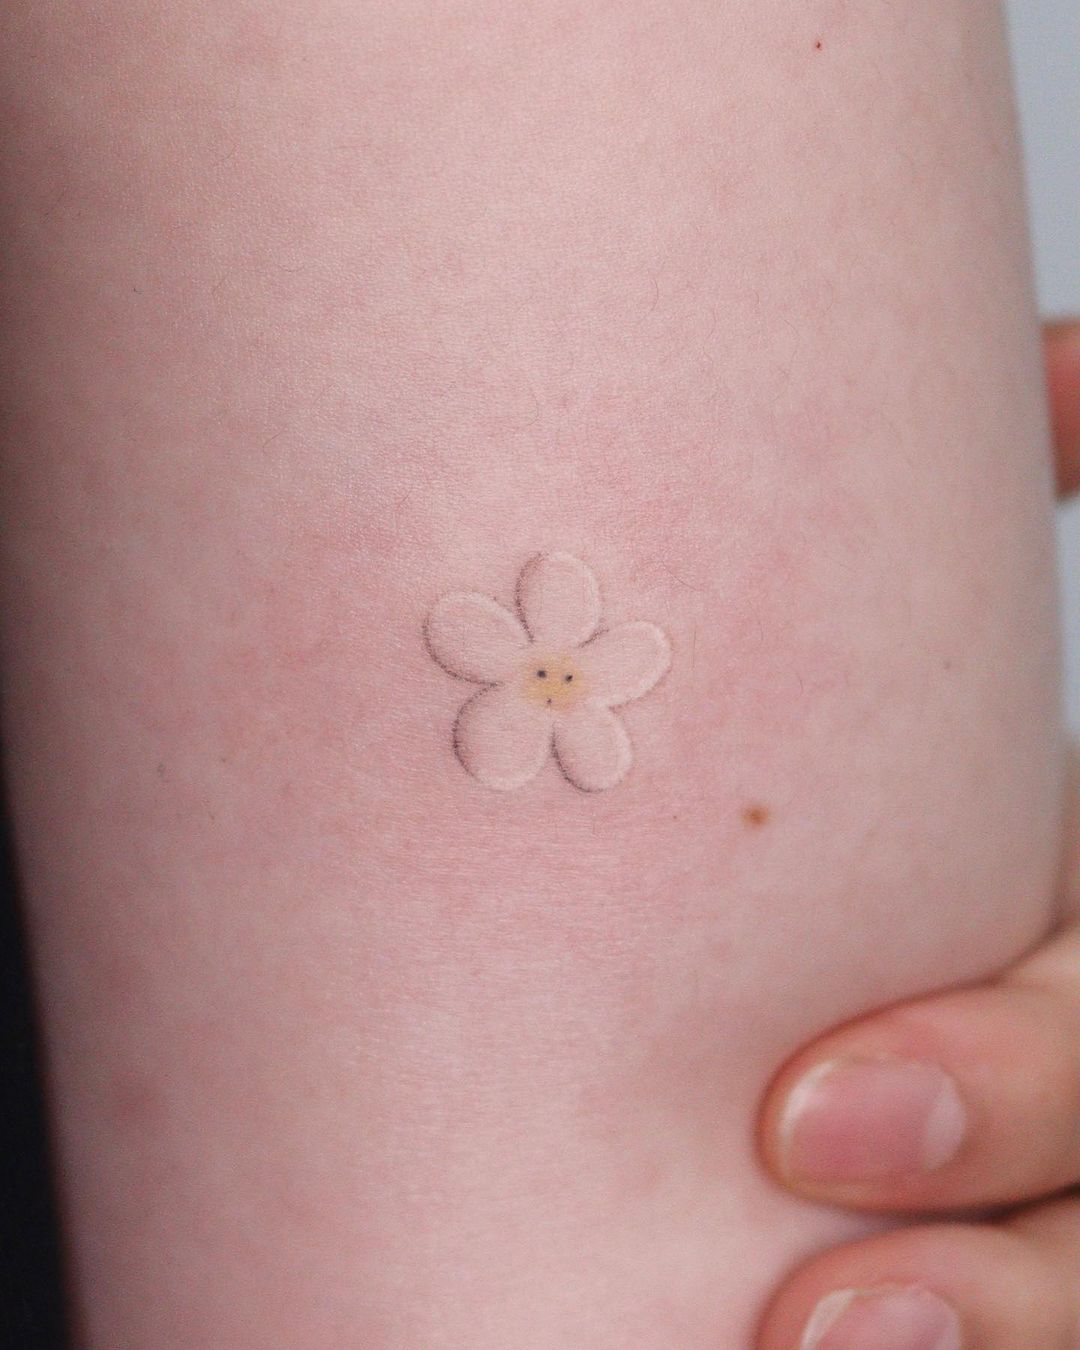 tiny flower tattoo ideas